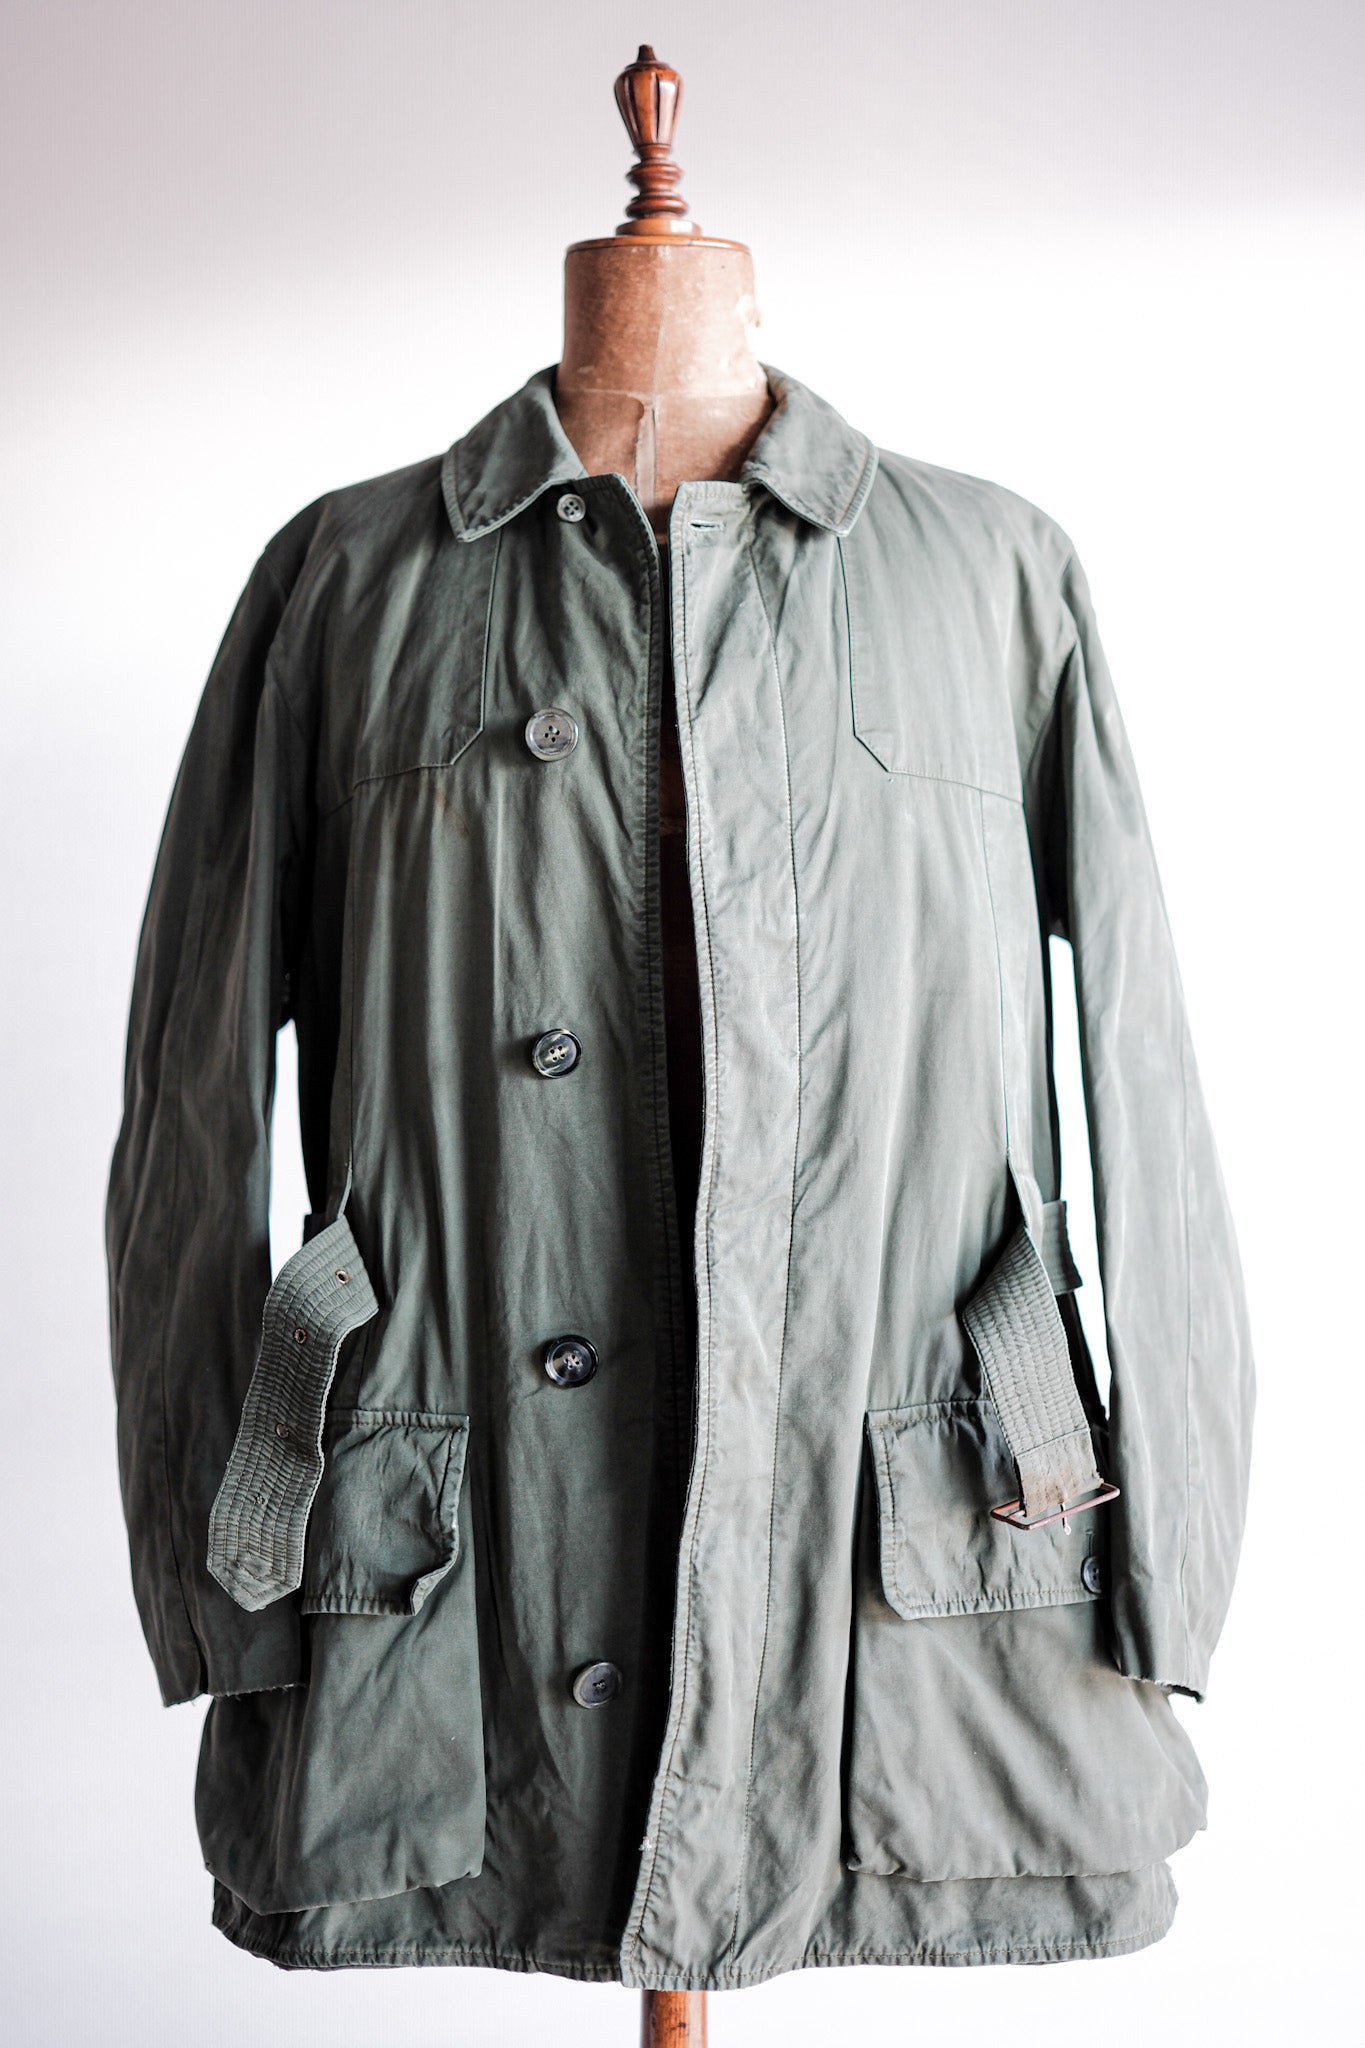 [〜60年代]復古格倫菲爾諾福克式夾克尺寸。40“山地標籤”